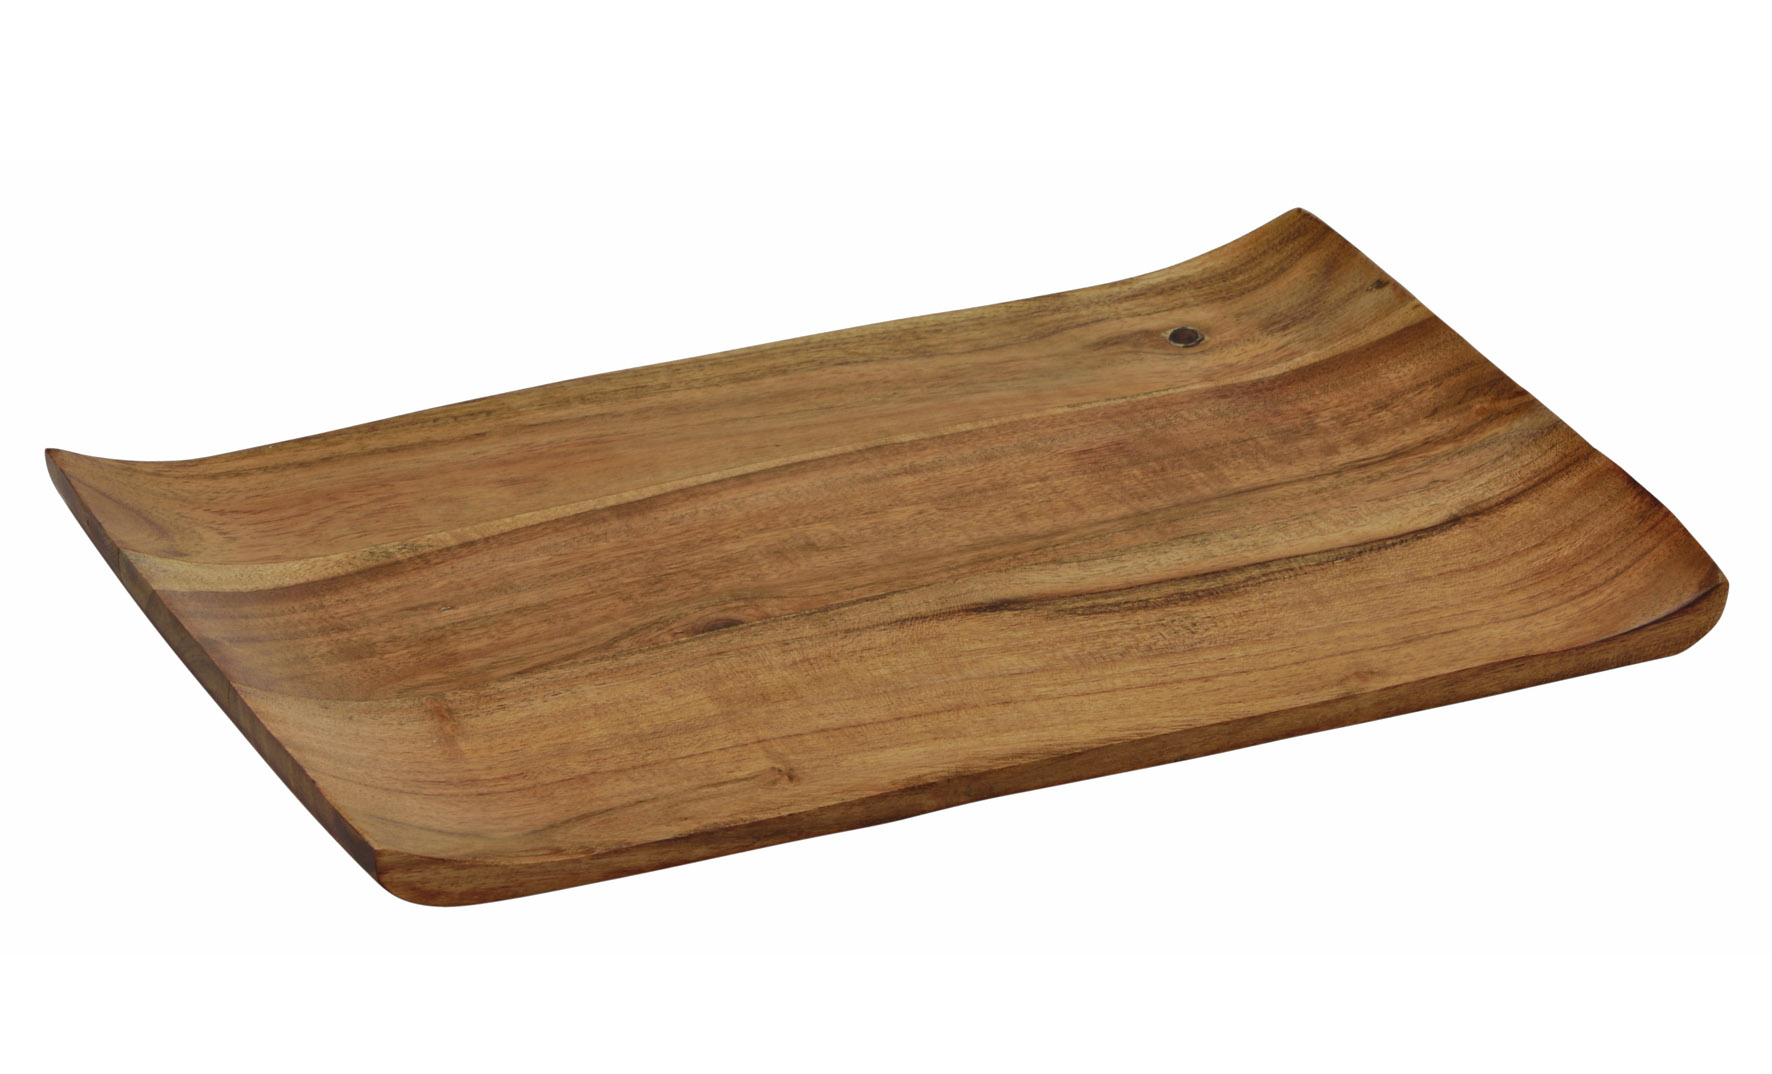 Akazien Servierbrett mit geschwungenen Rändern - 31 x 20 cm - Holz Deko Kerzentablett